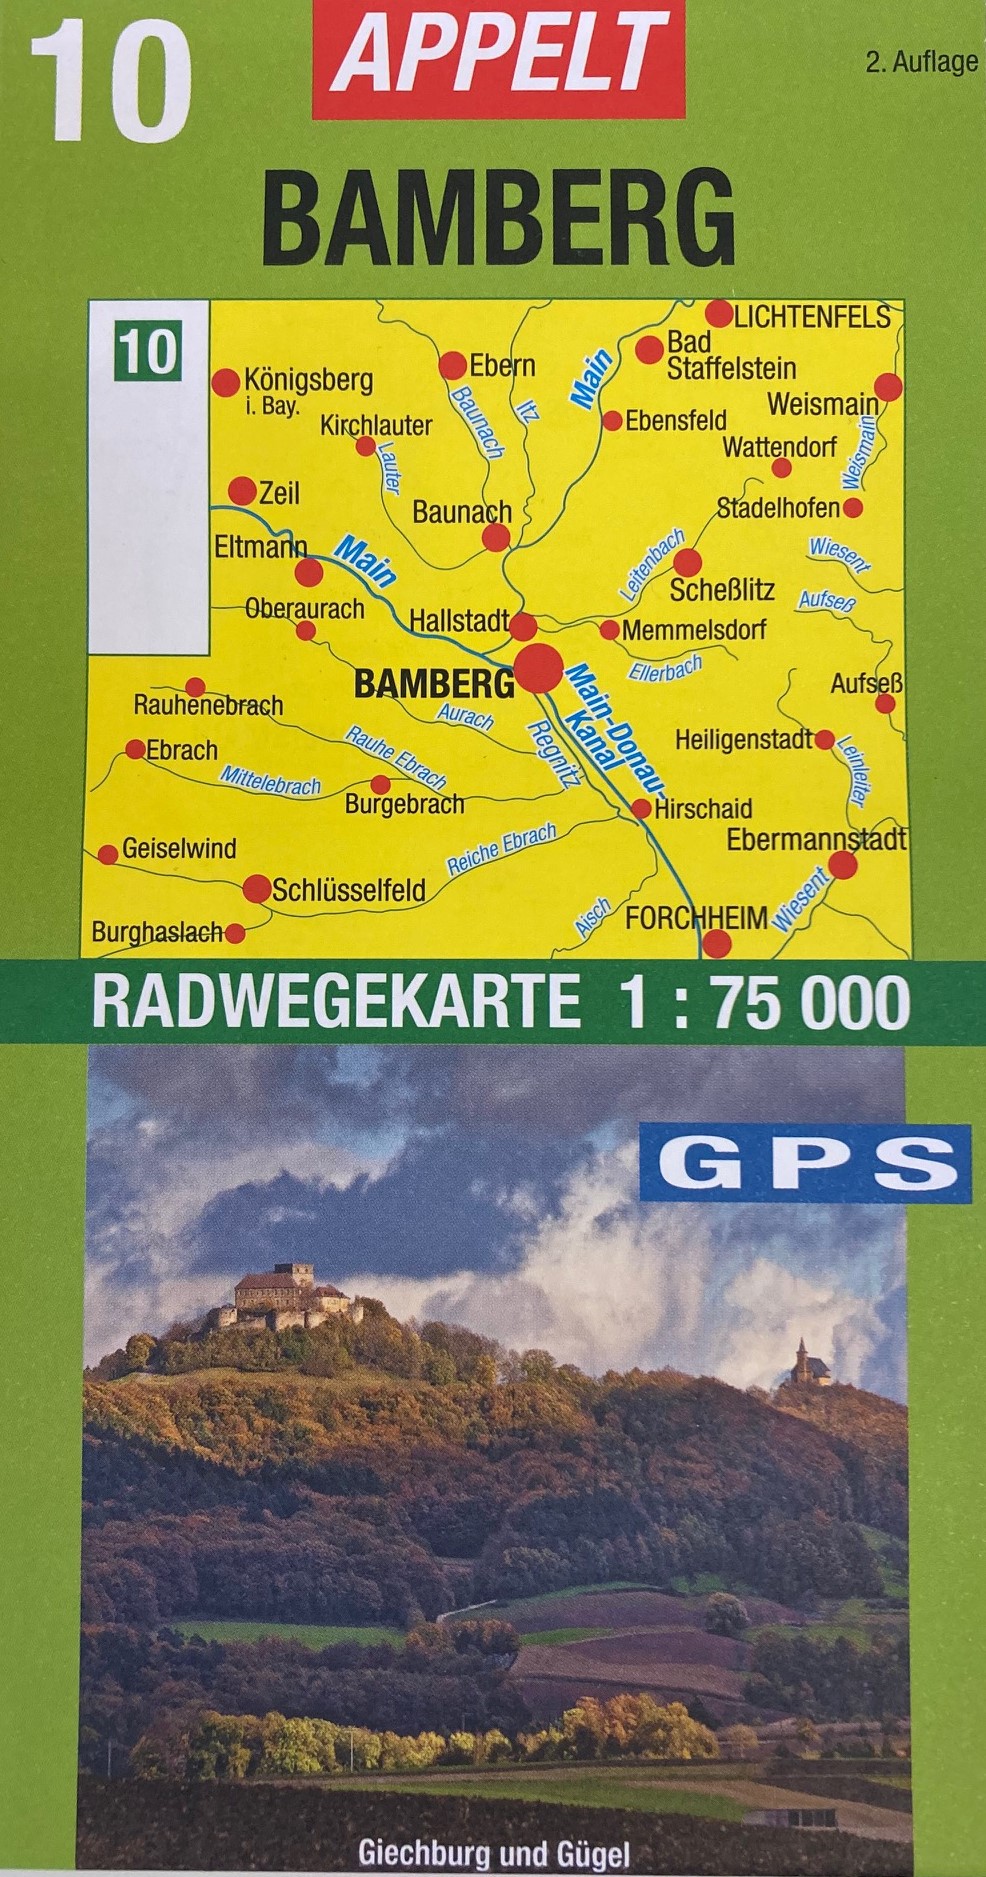 Appelt Radwegekarte Bamberg